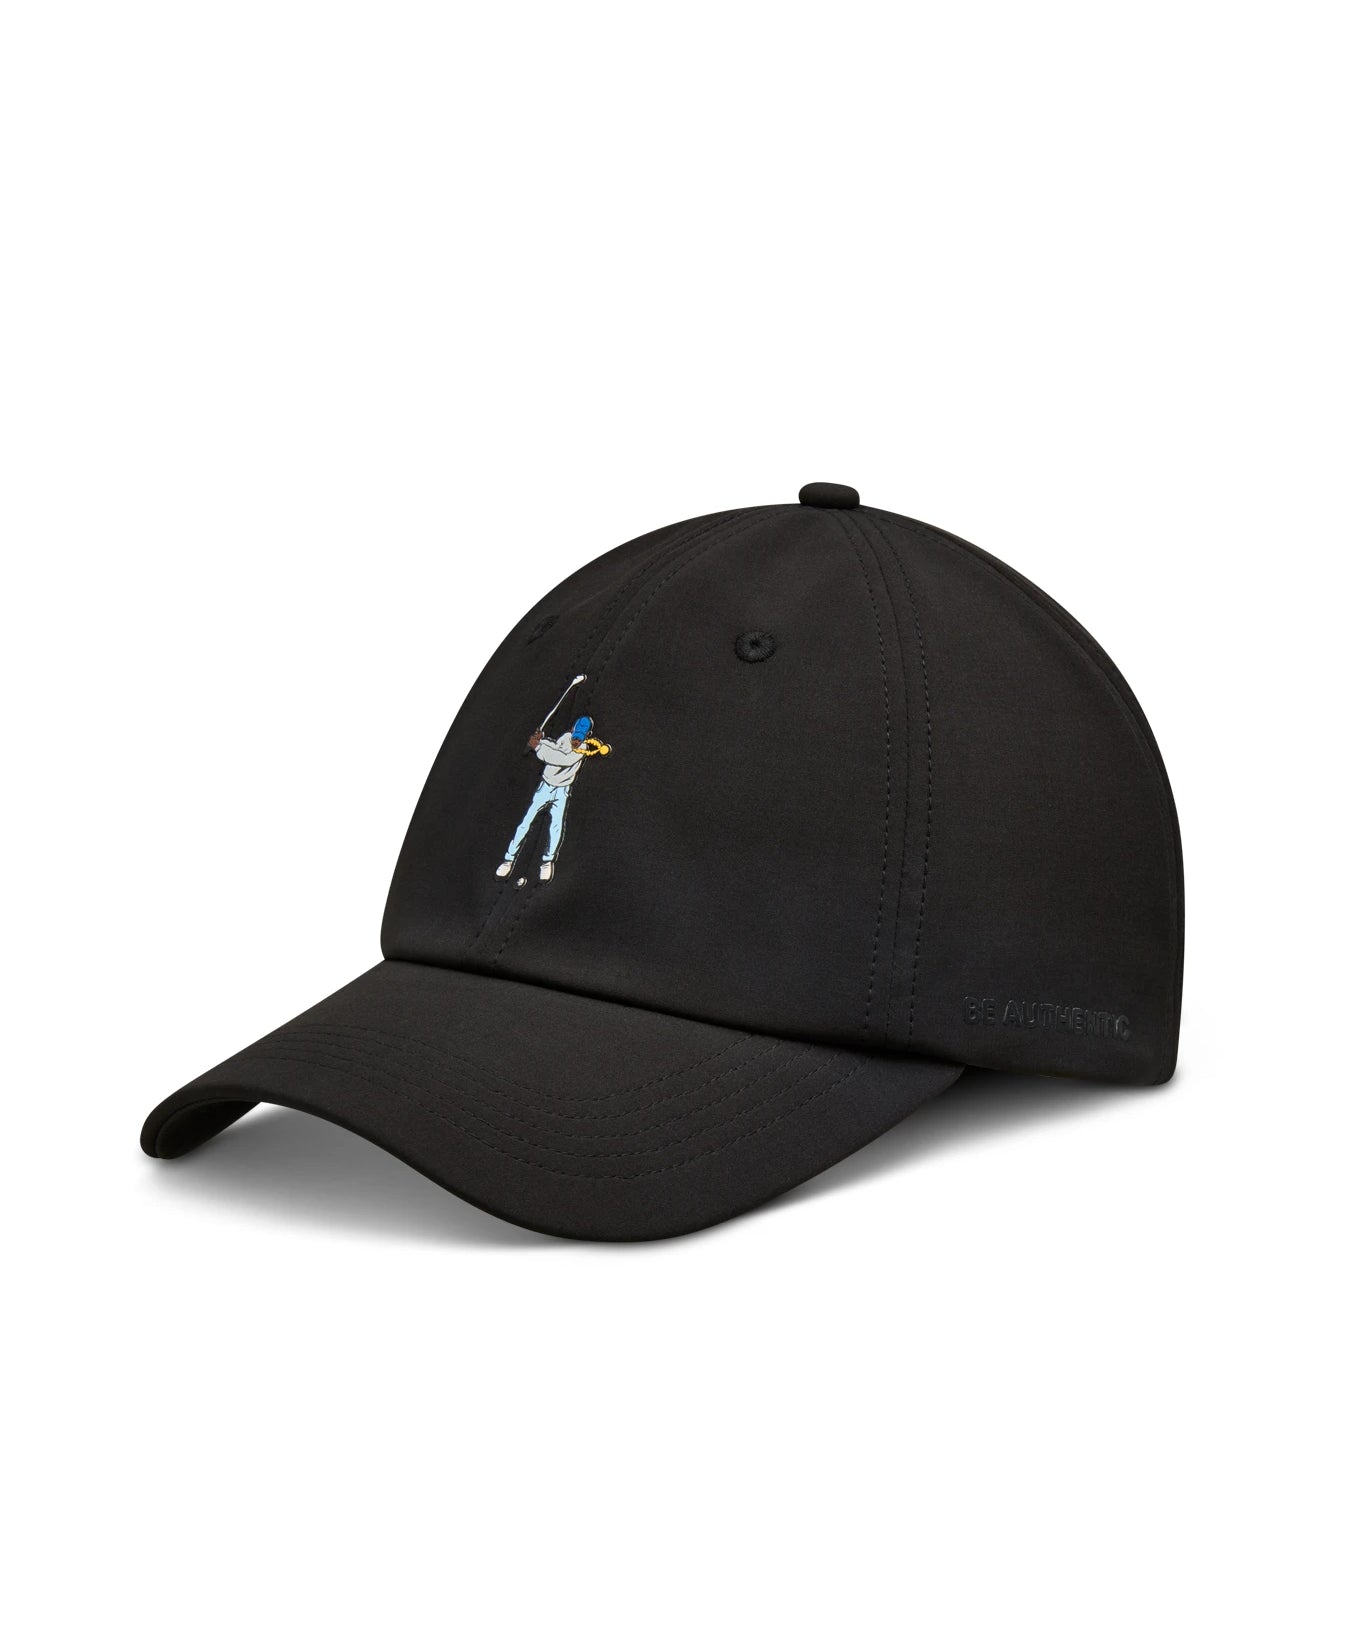 Black Eastside Golf Ponytail Hat